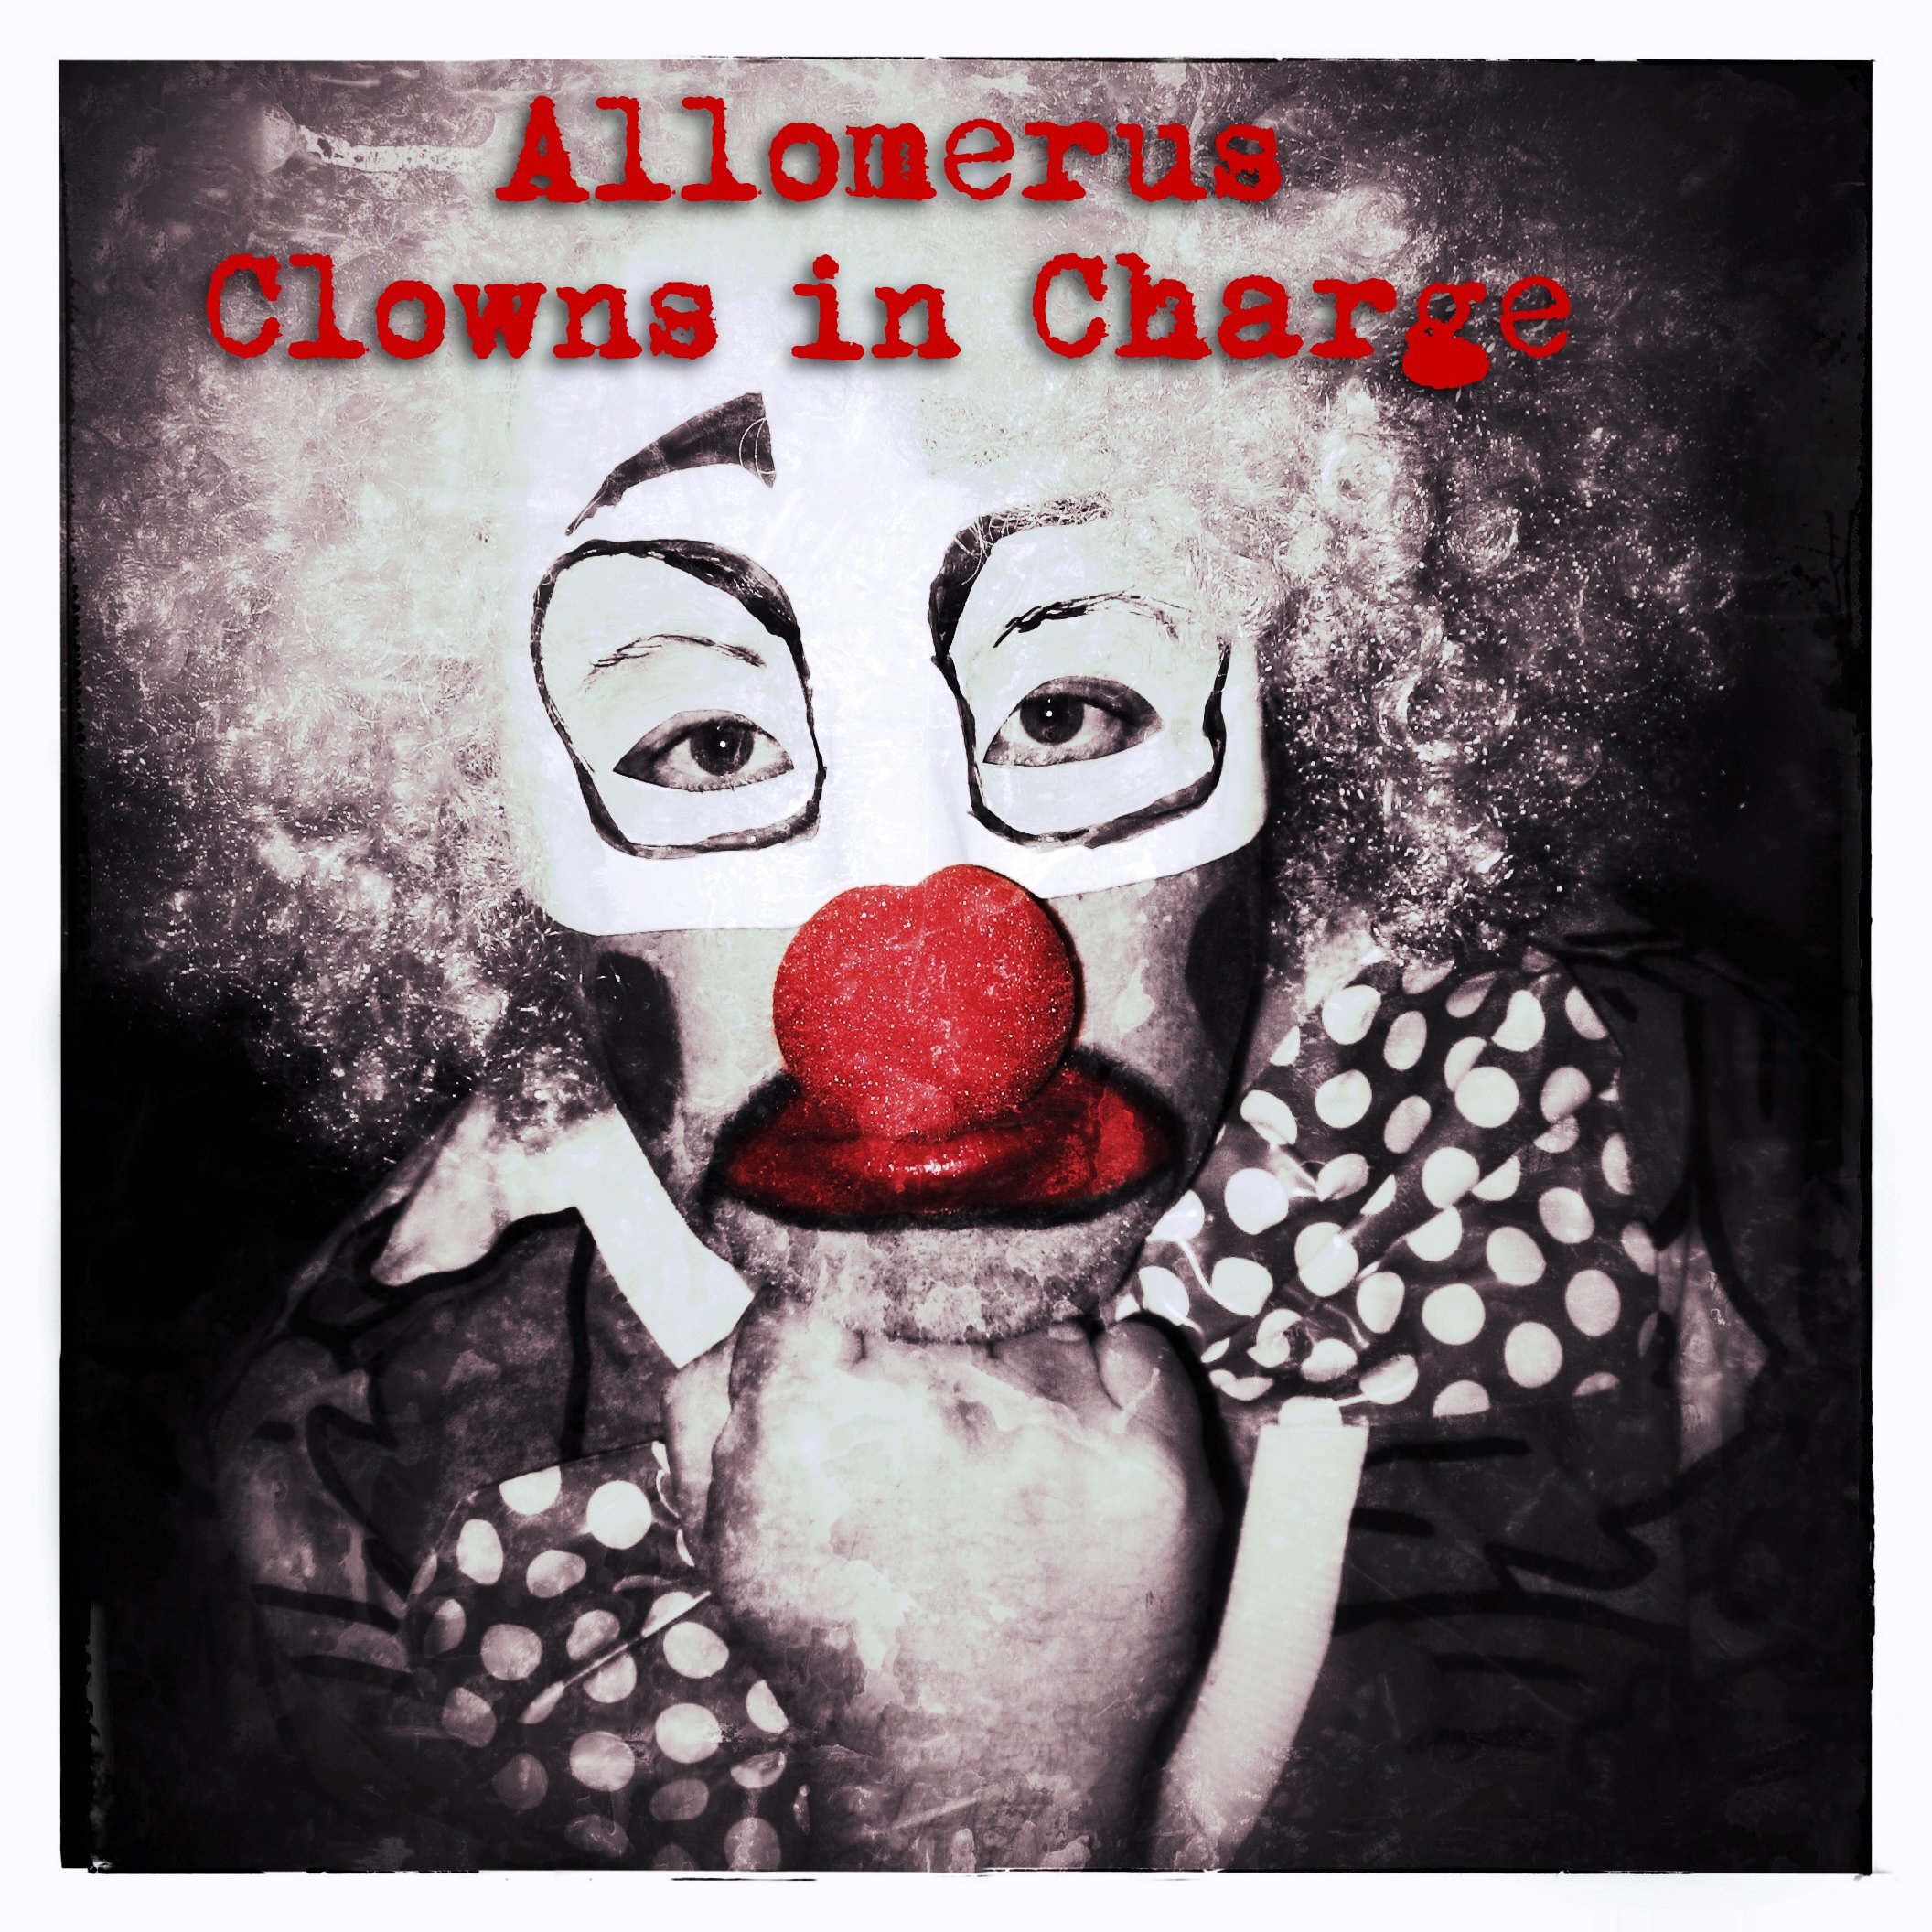 Песенки клоун плюх. Альбом с клоуном на обложке. Главный клоун обложка.